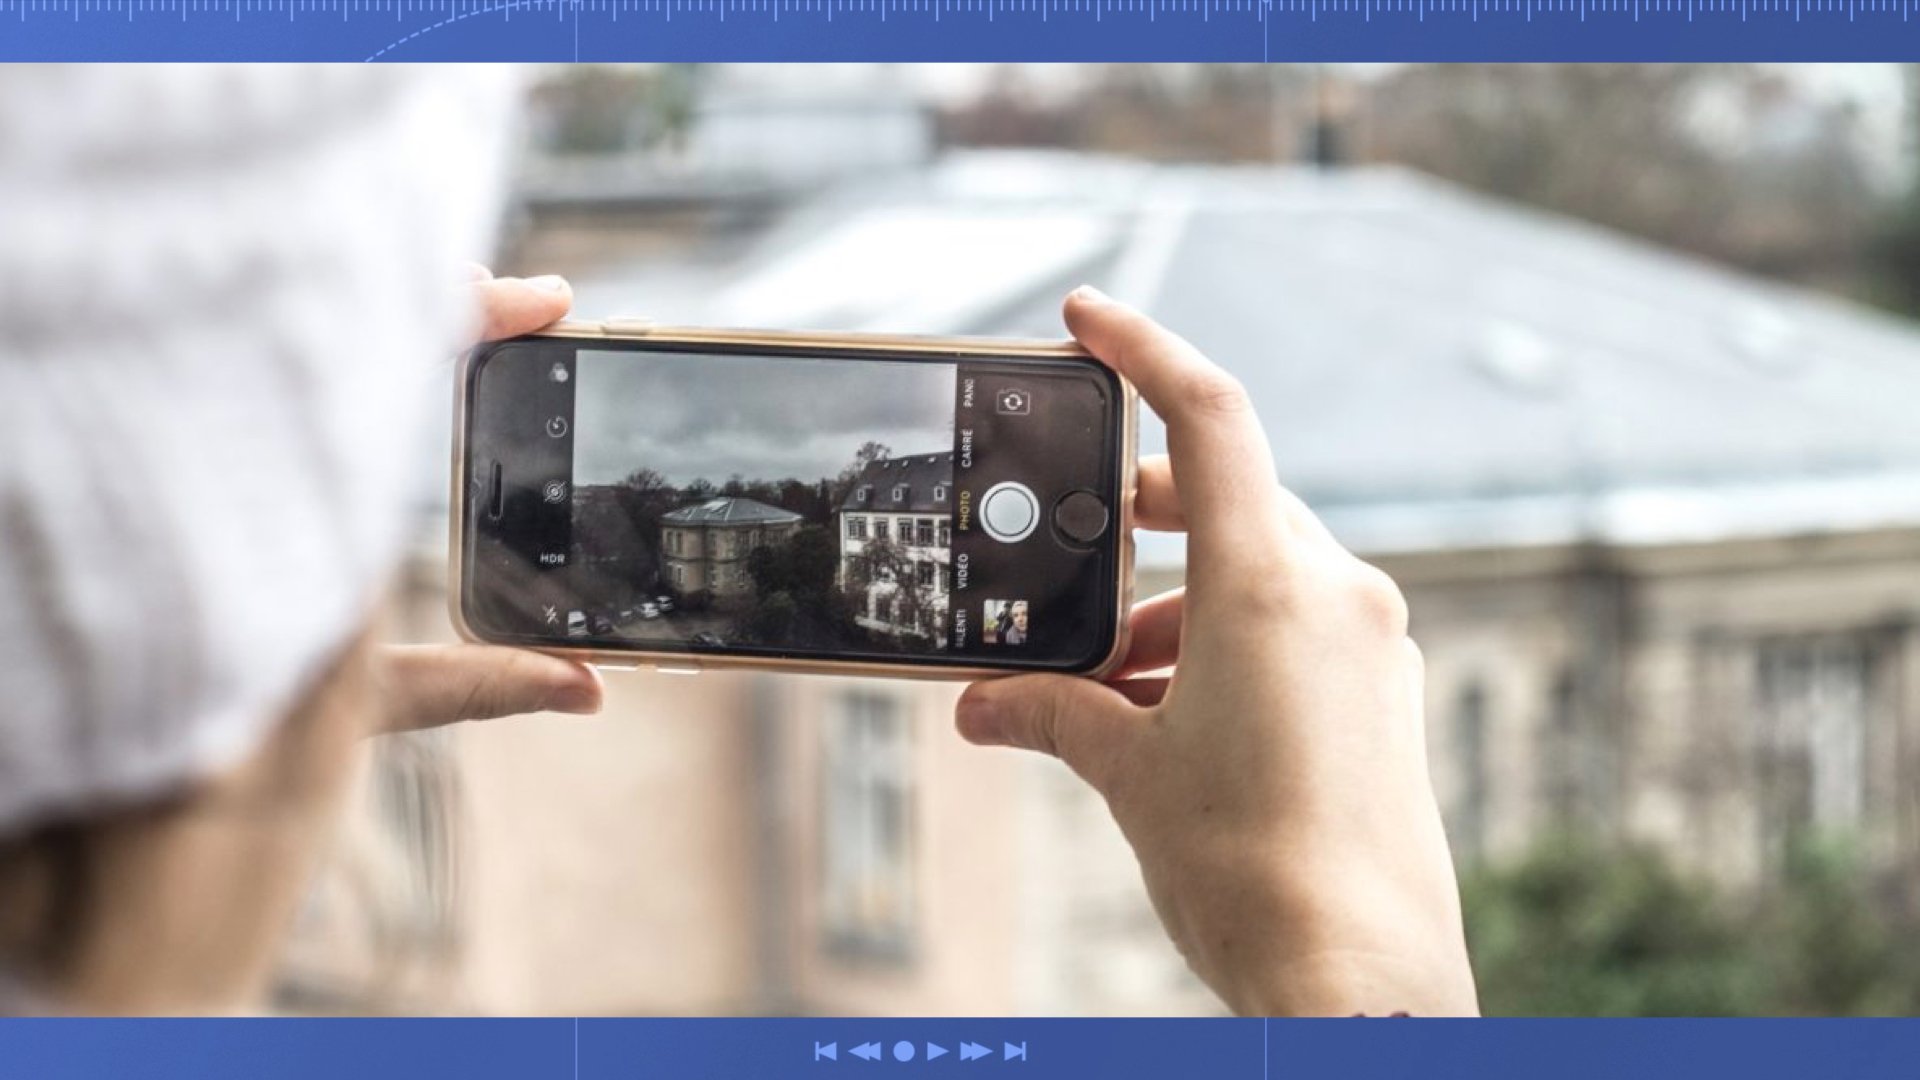 5 accessoires pour portable – Comment améliorer ses photos sur smartphone?